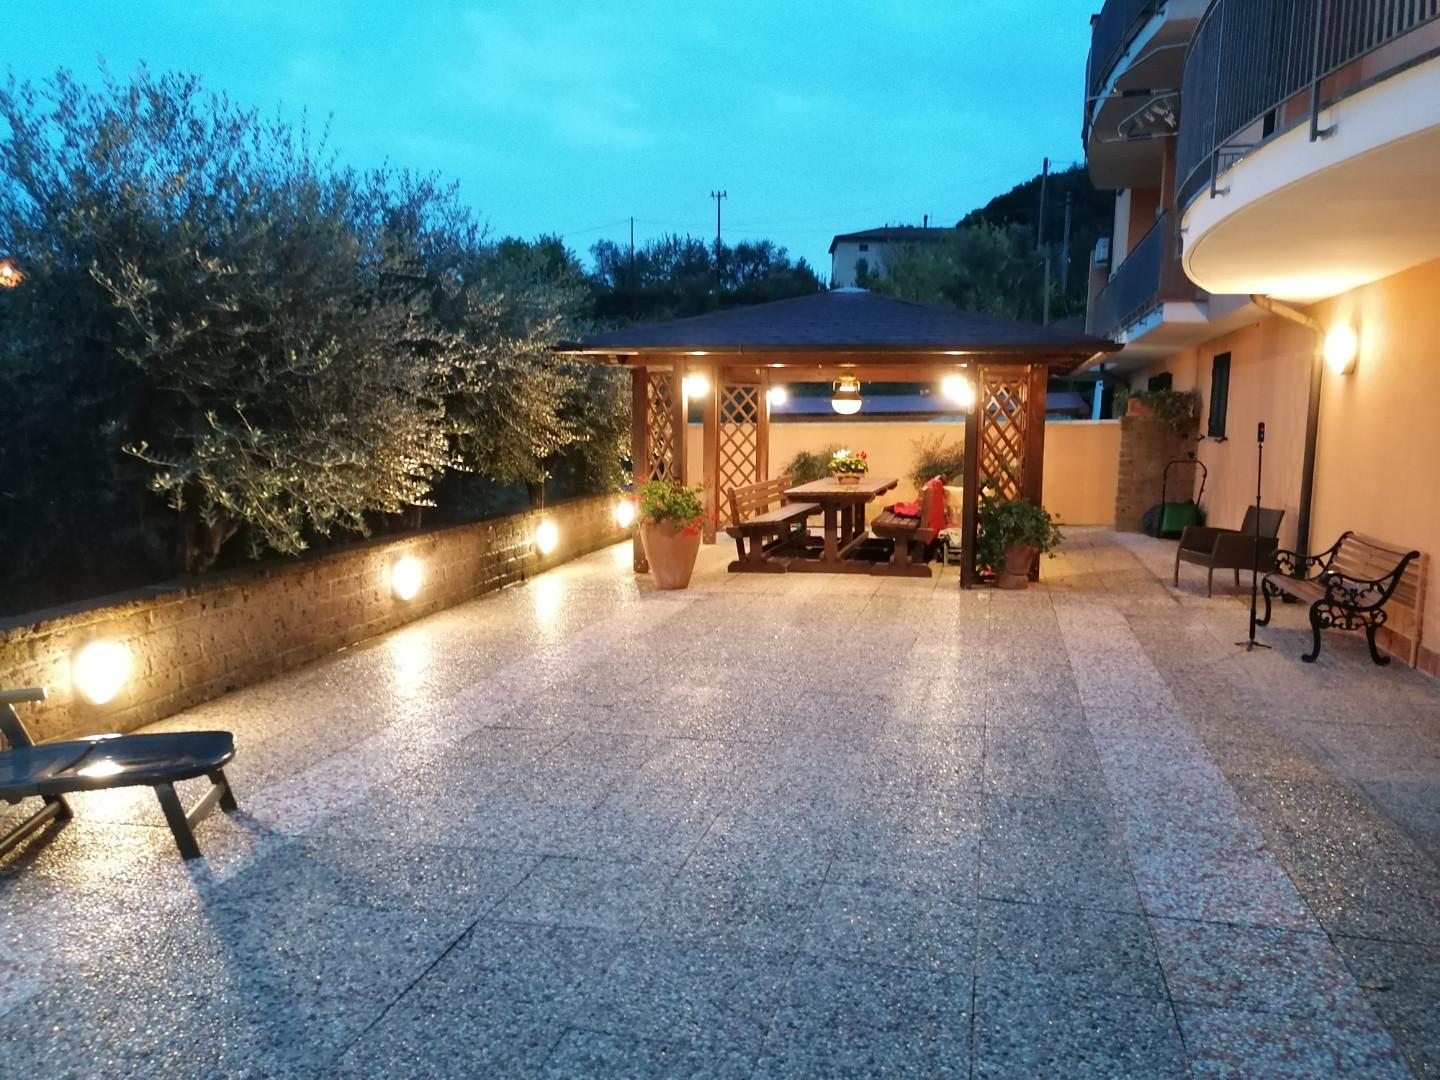 Semi-detached house for sale in Casciana Terme Lari (PI)